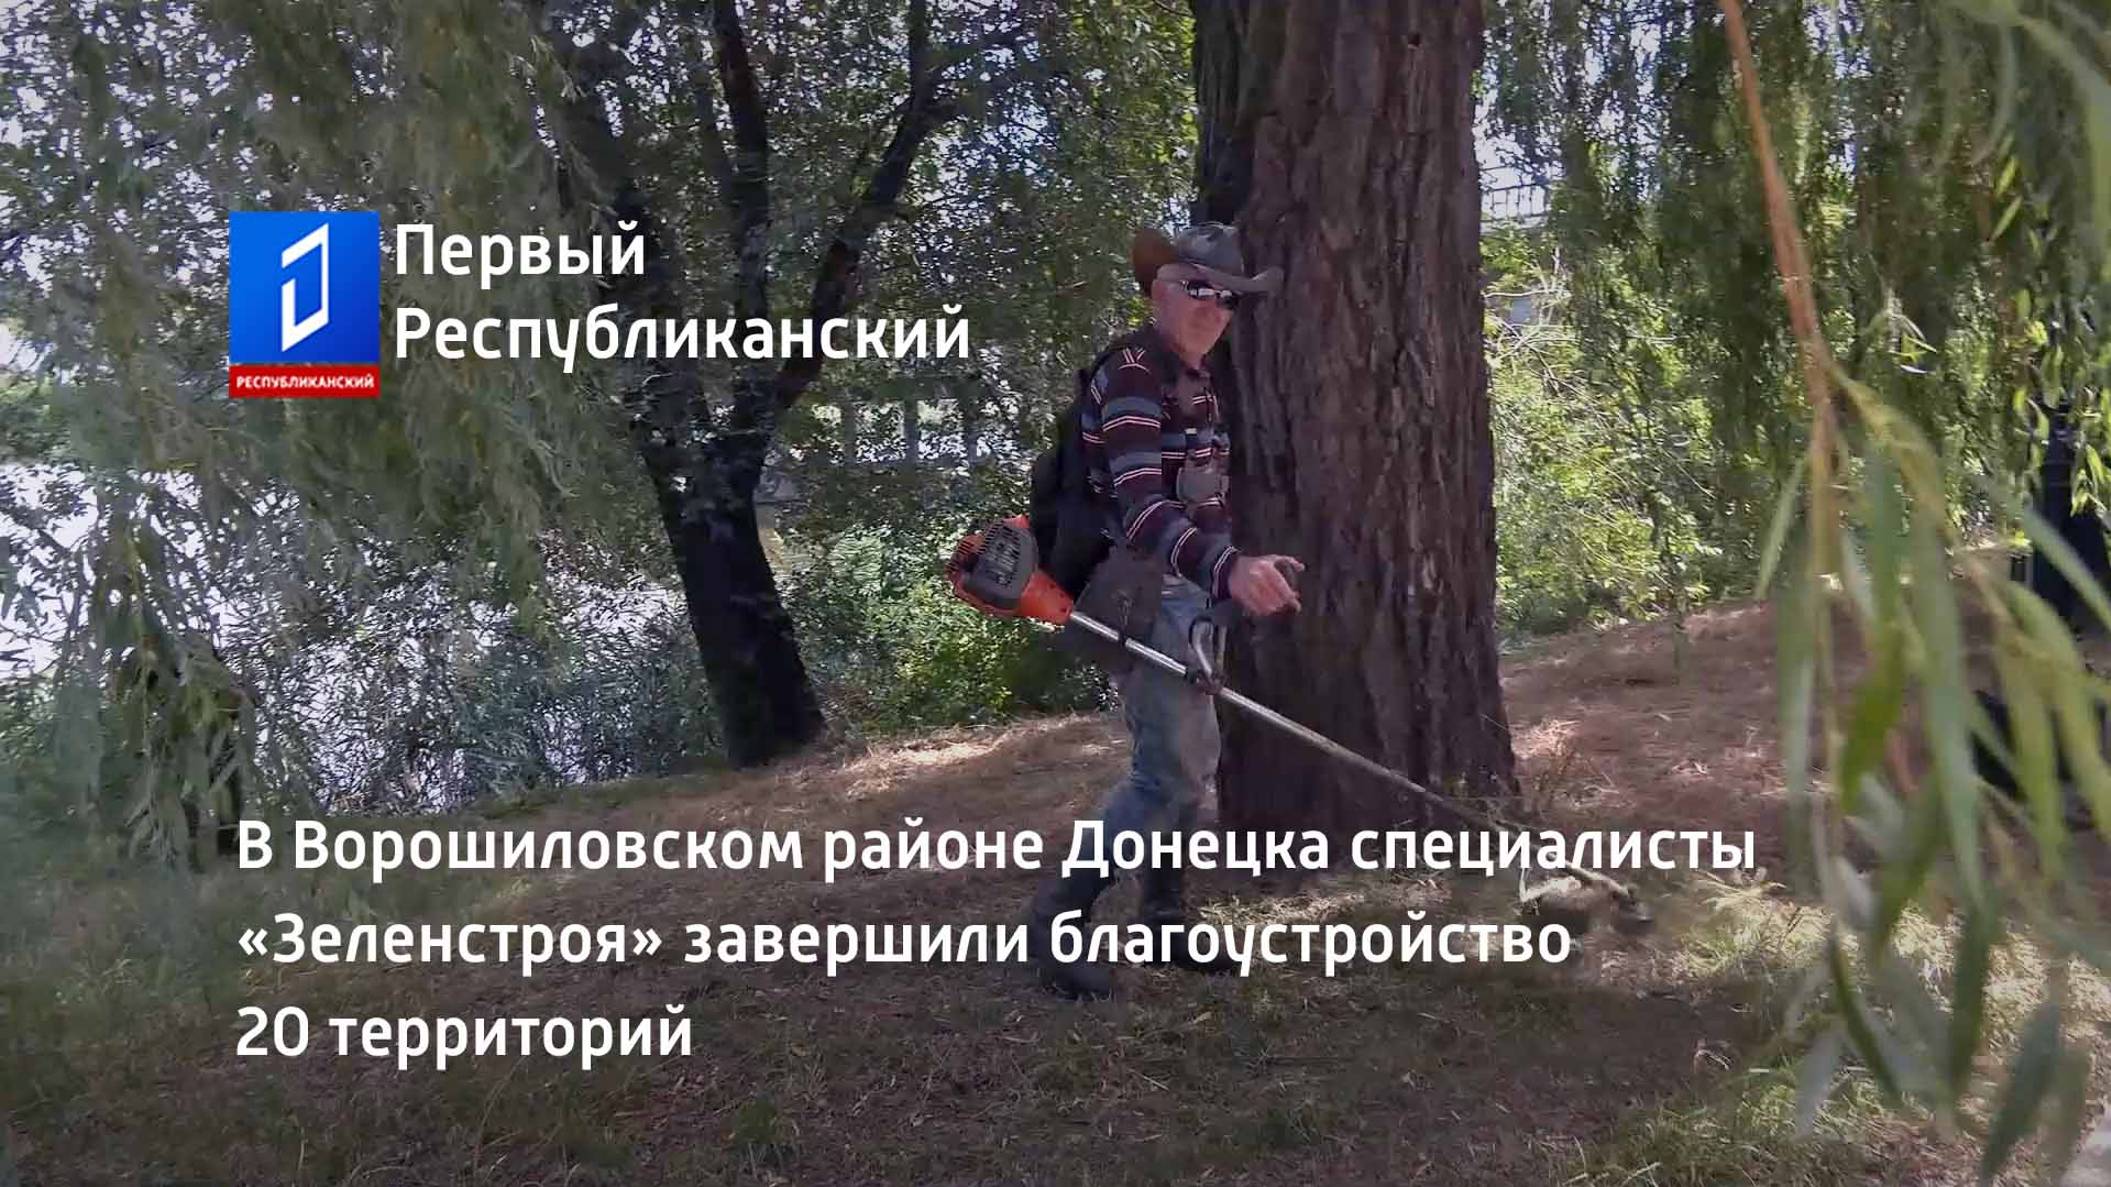 В Ворошиловском районе Донецка специалисты «Зеленстроя» завершили благоустройство 20 территорий